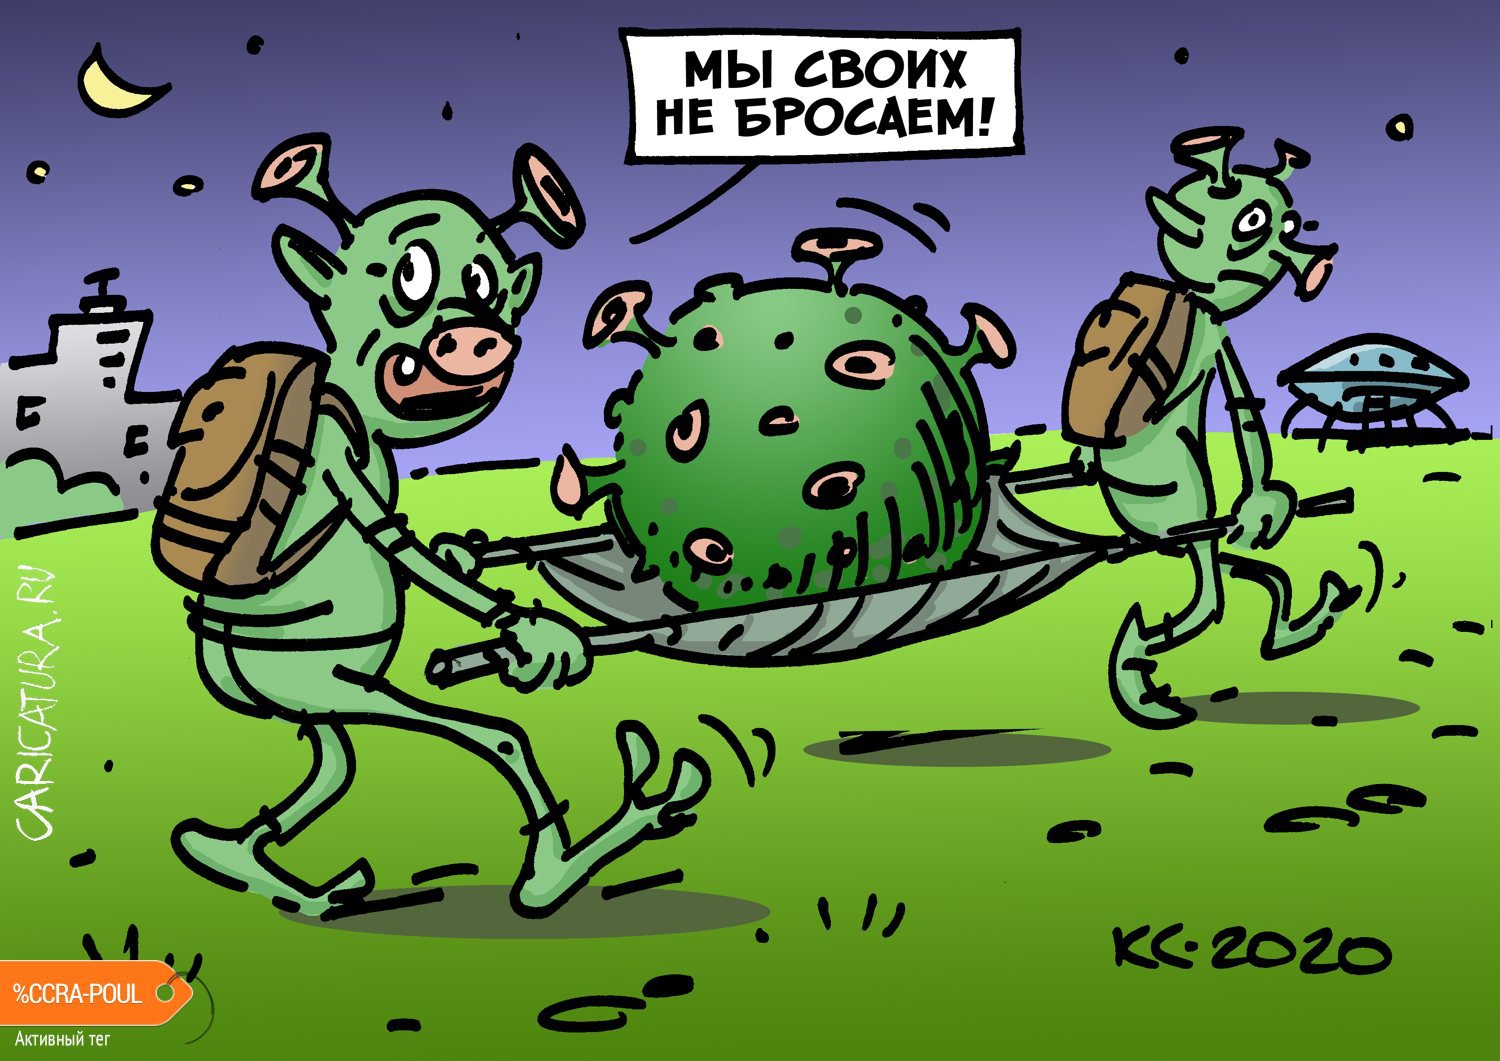 Карикатура "Мы своих не бросаем!", Вячеслав Капрельянц